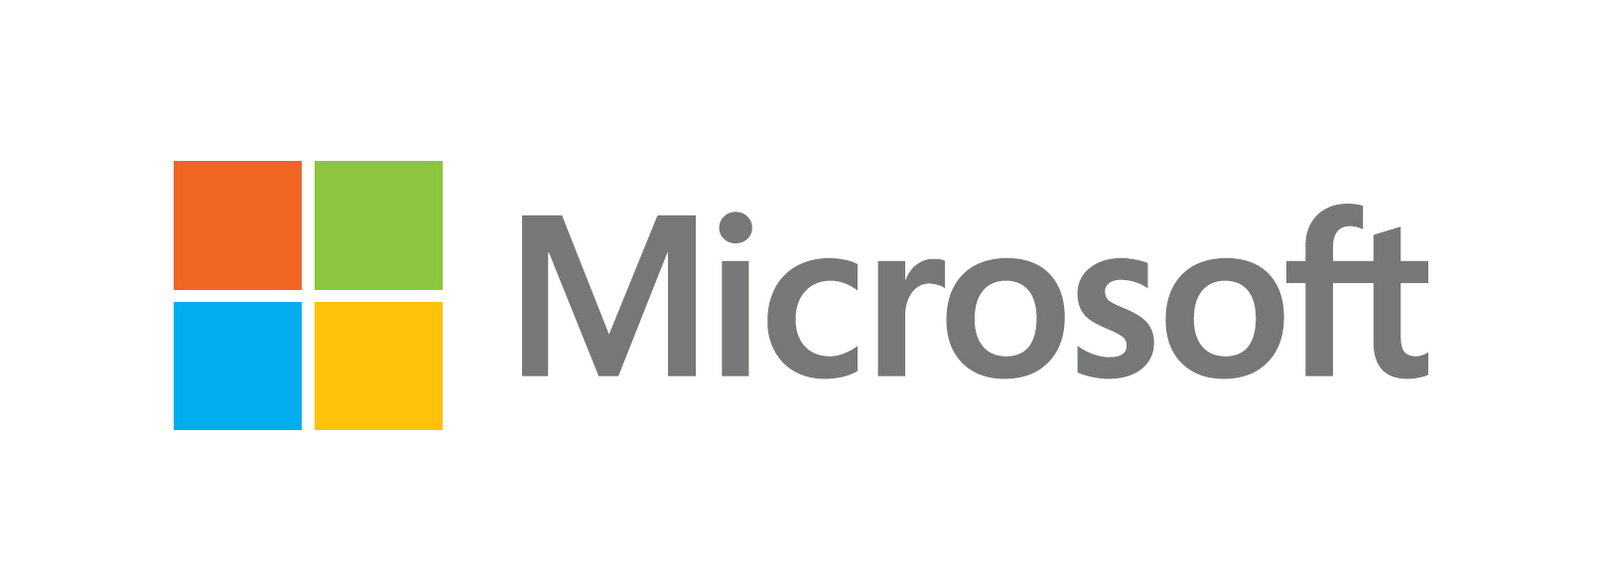 Новый логотип Майкрософта